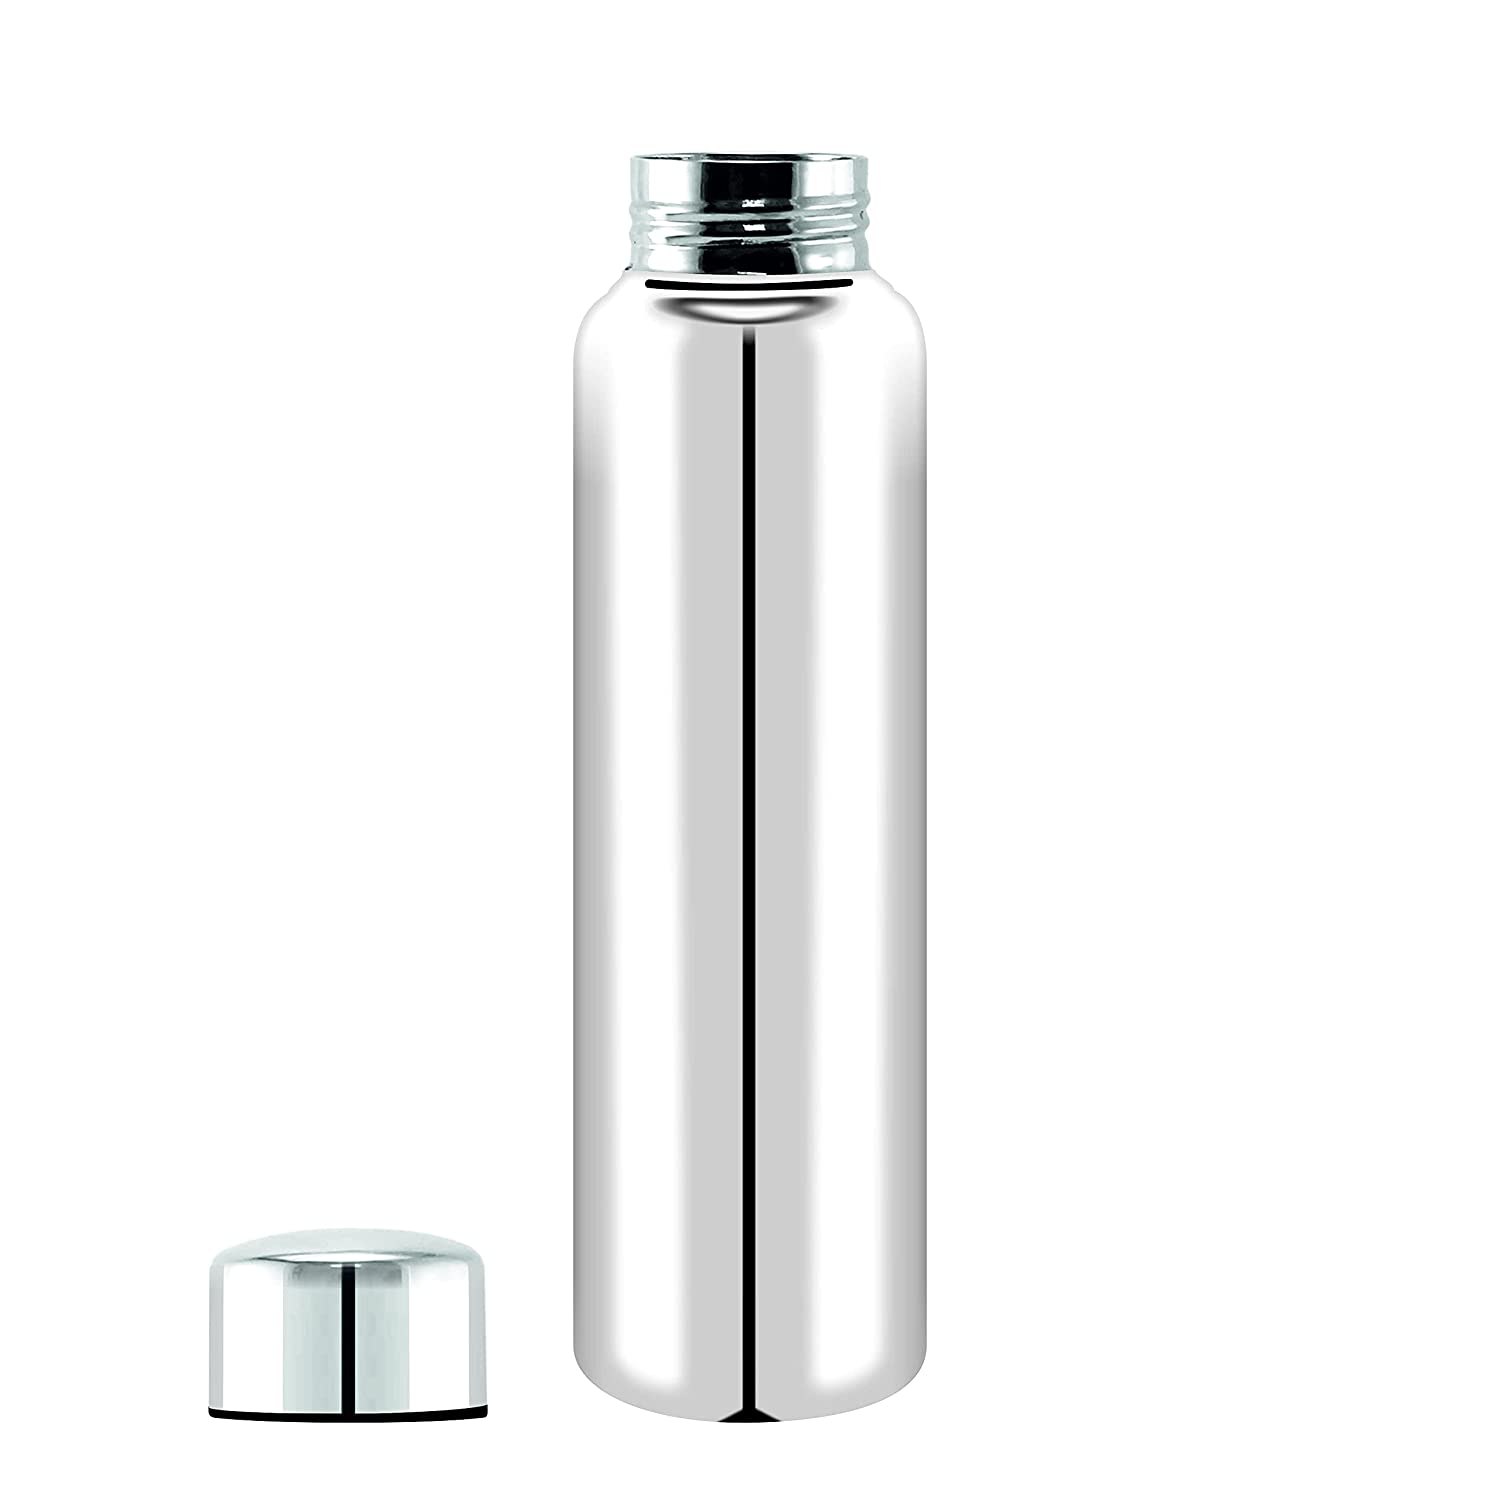 JDX  Stainless Steel Water Bottle 1000ml(1 litre)Approx, Stainless Steel Bottle silver, Steel fridge Bottle ,Steel Sports Bottle,Steel Bottle, Gym,Office,Water Bottle 900ml. Pack of 1